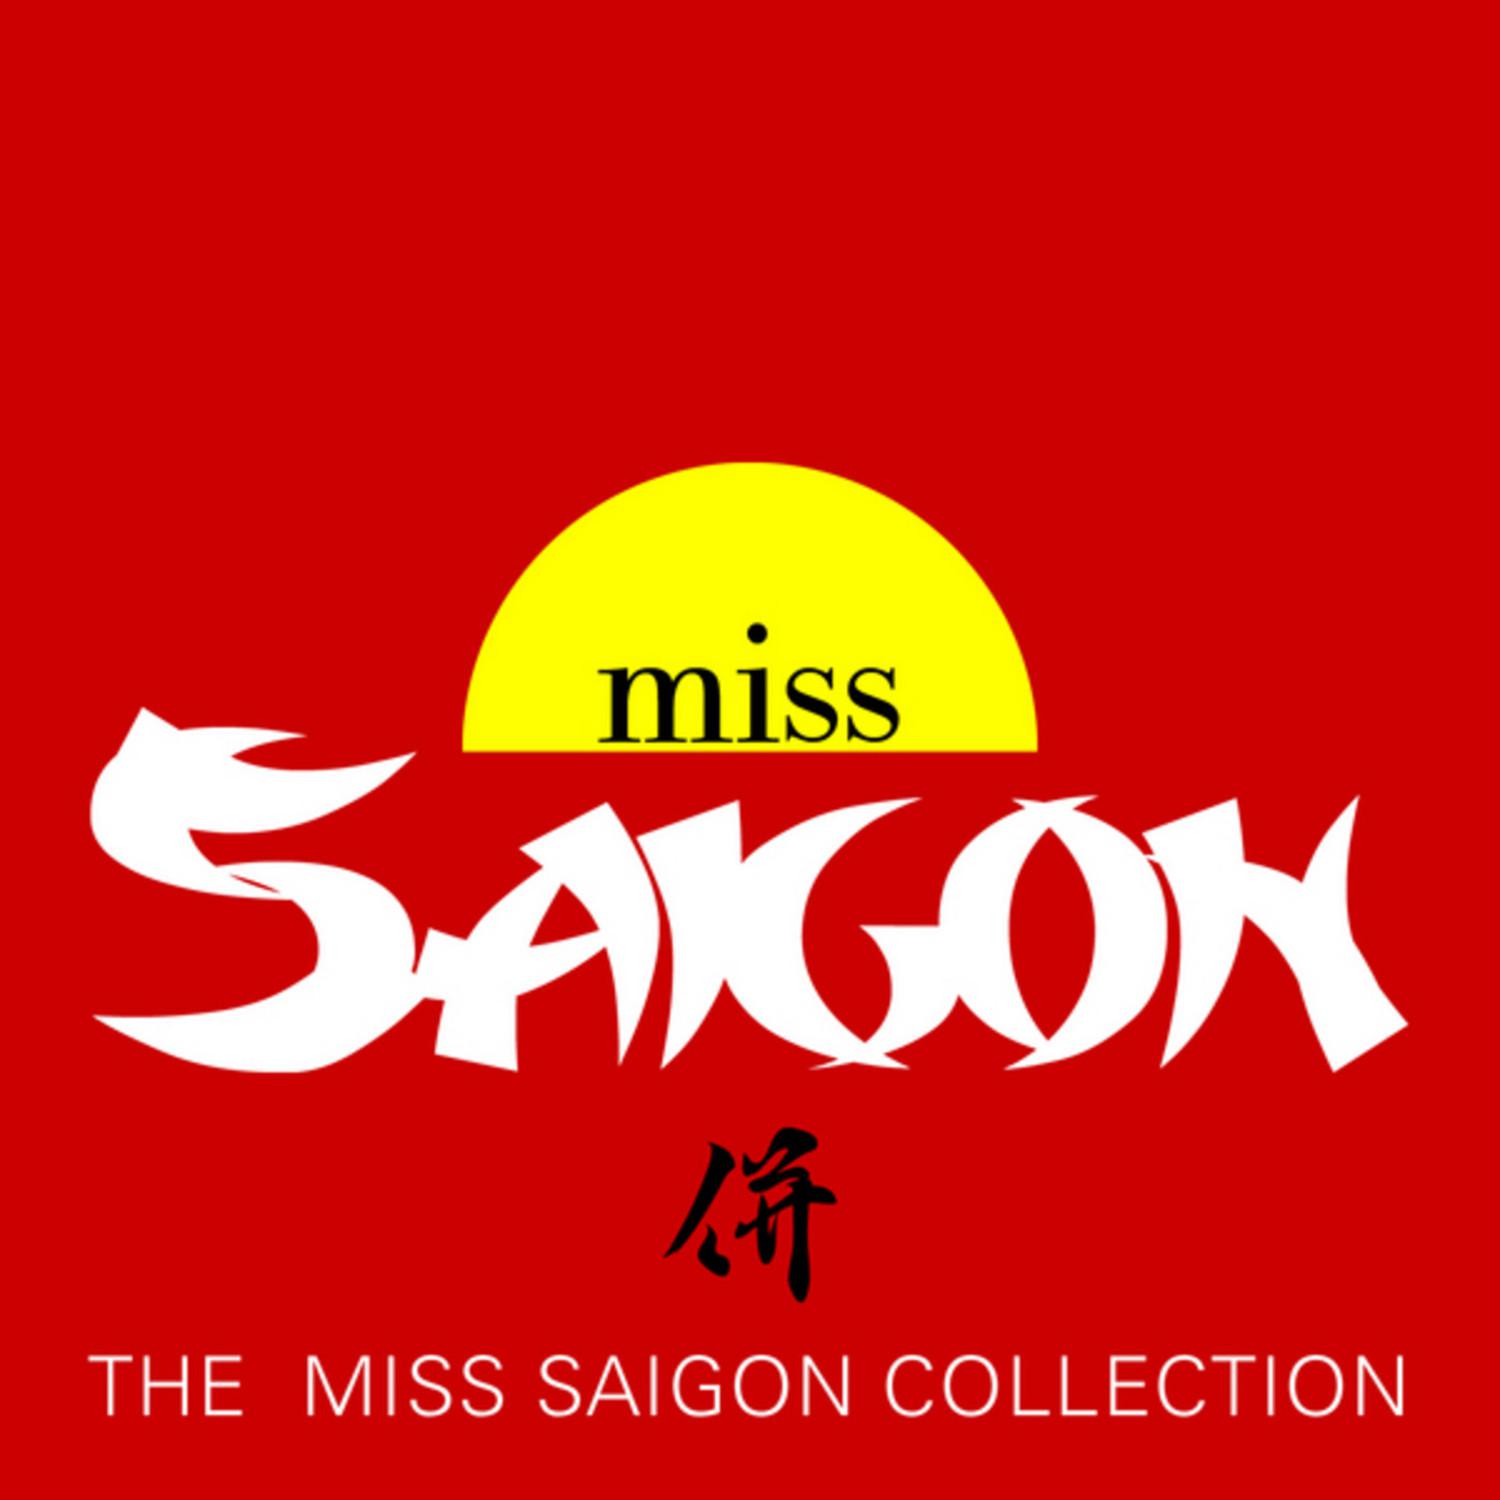 The Miss Saigon Collection